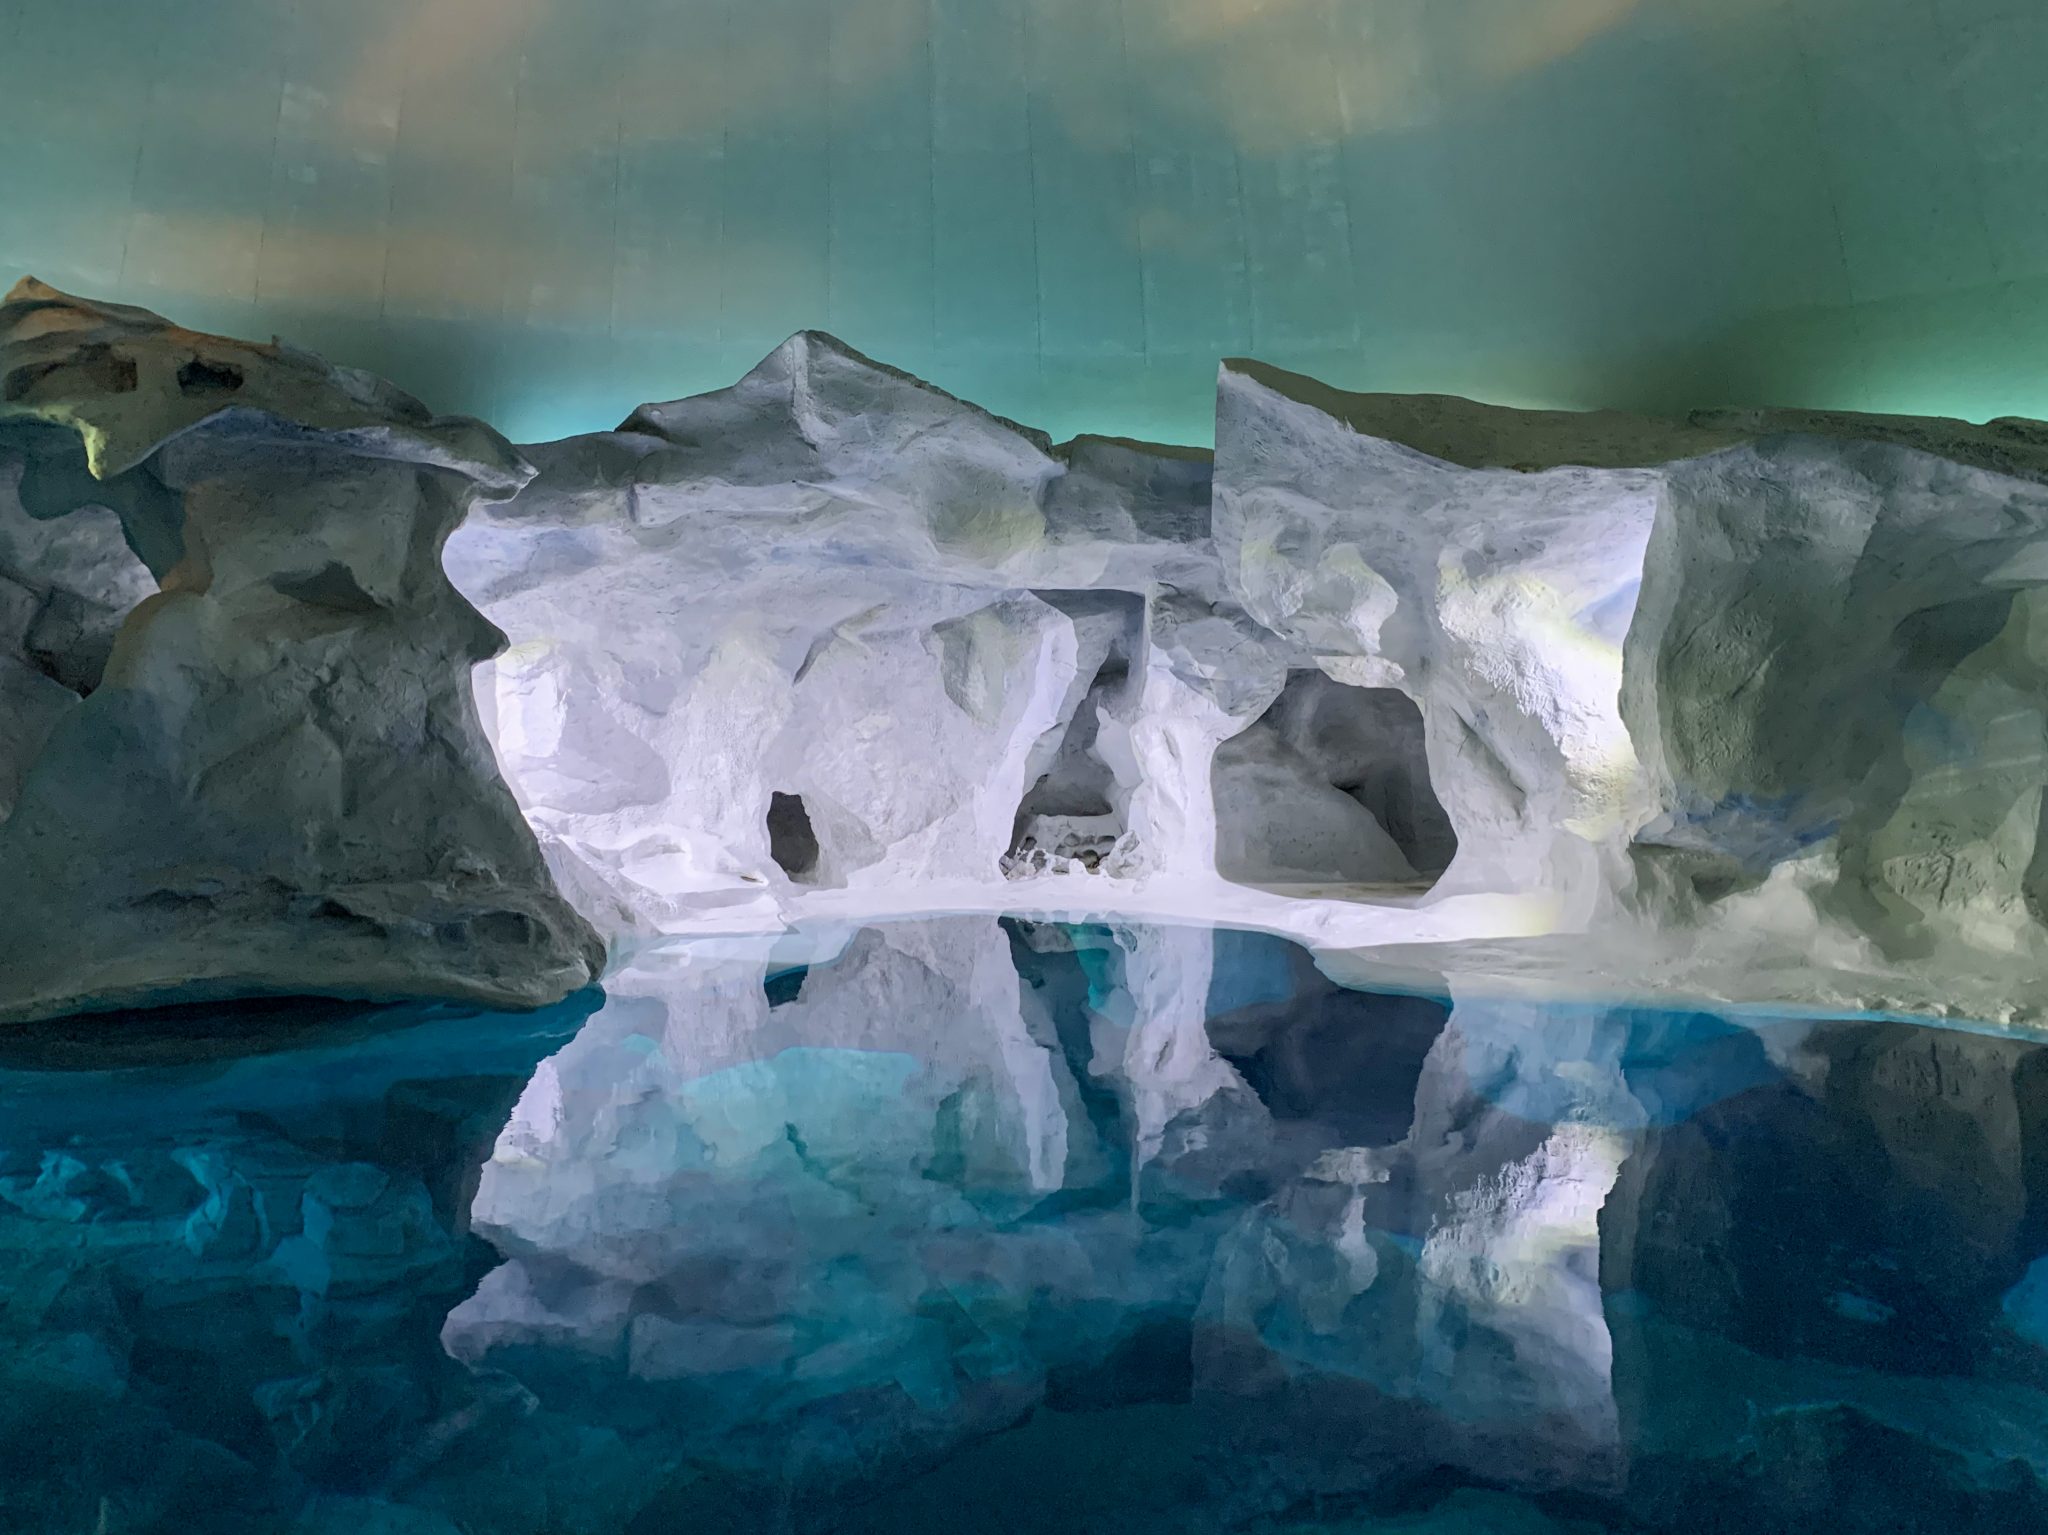 Interior imitation arctic landscape